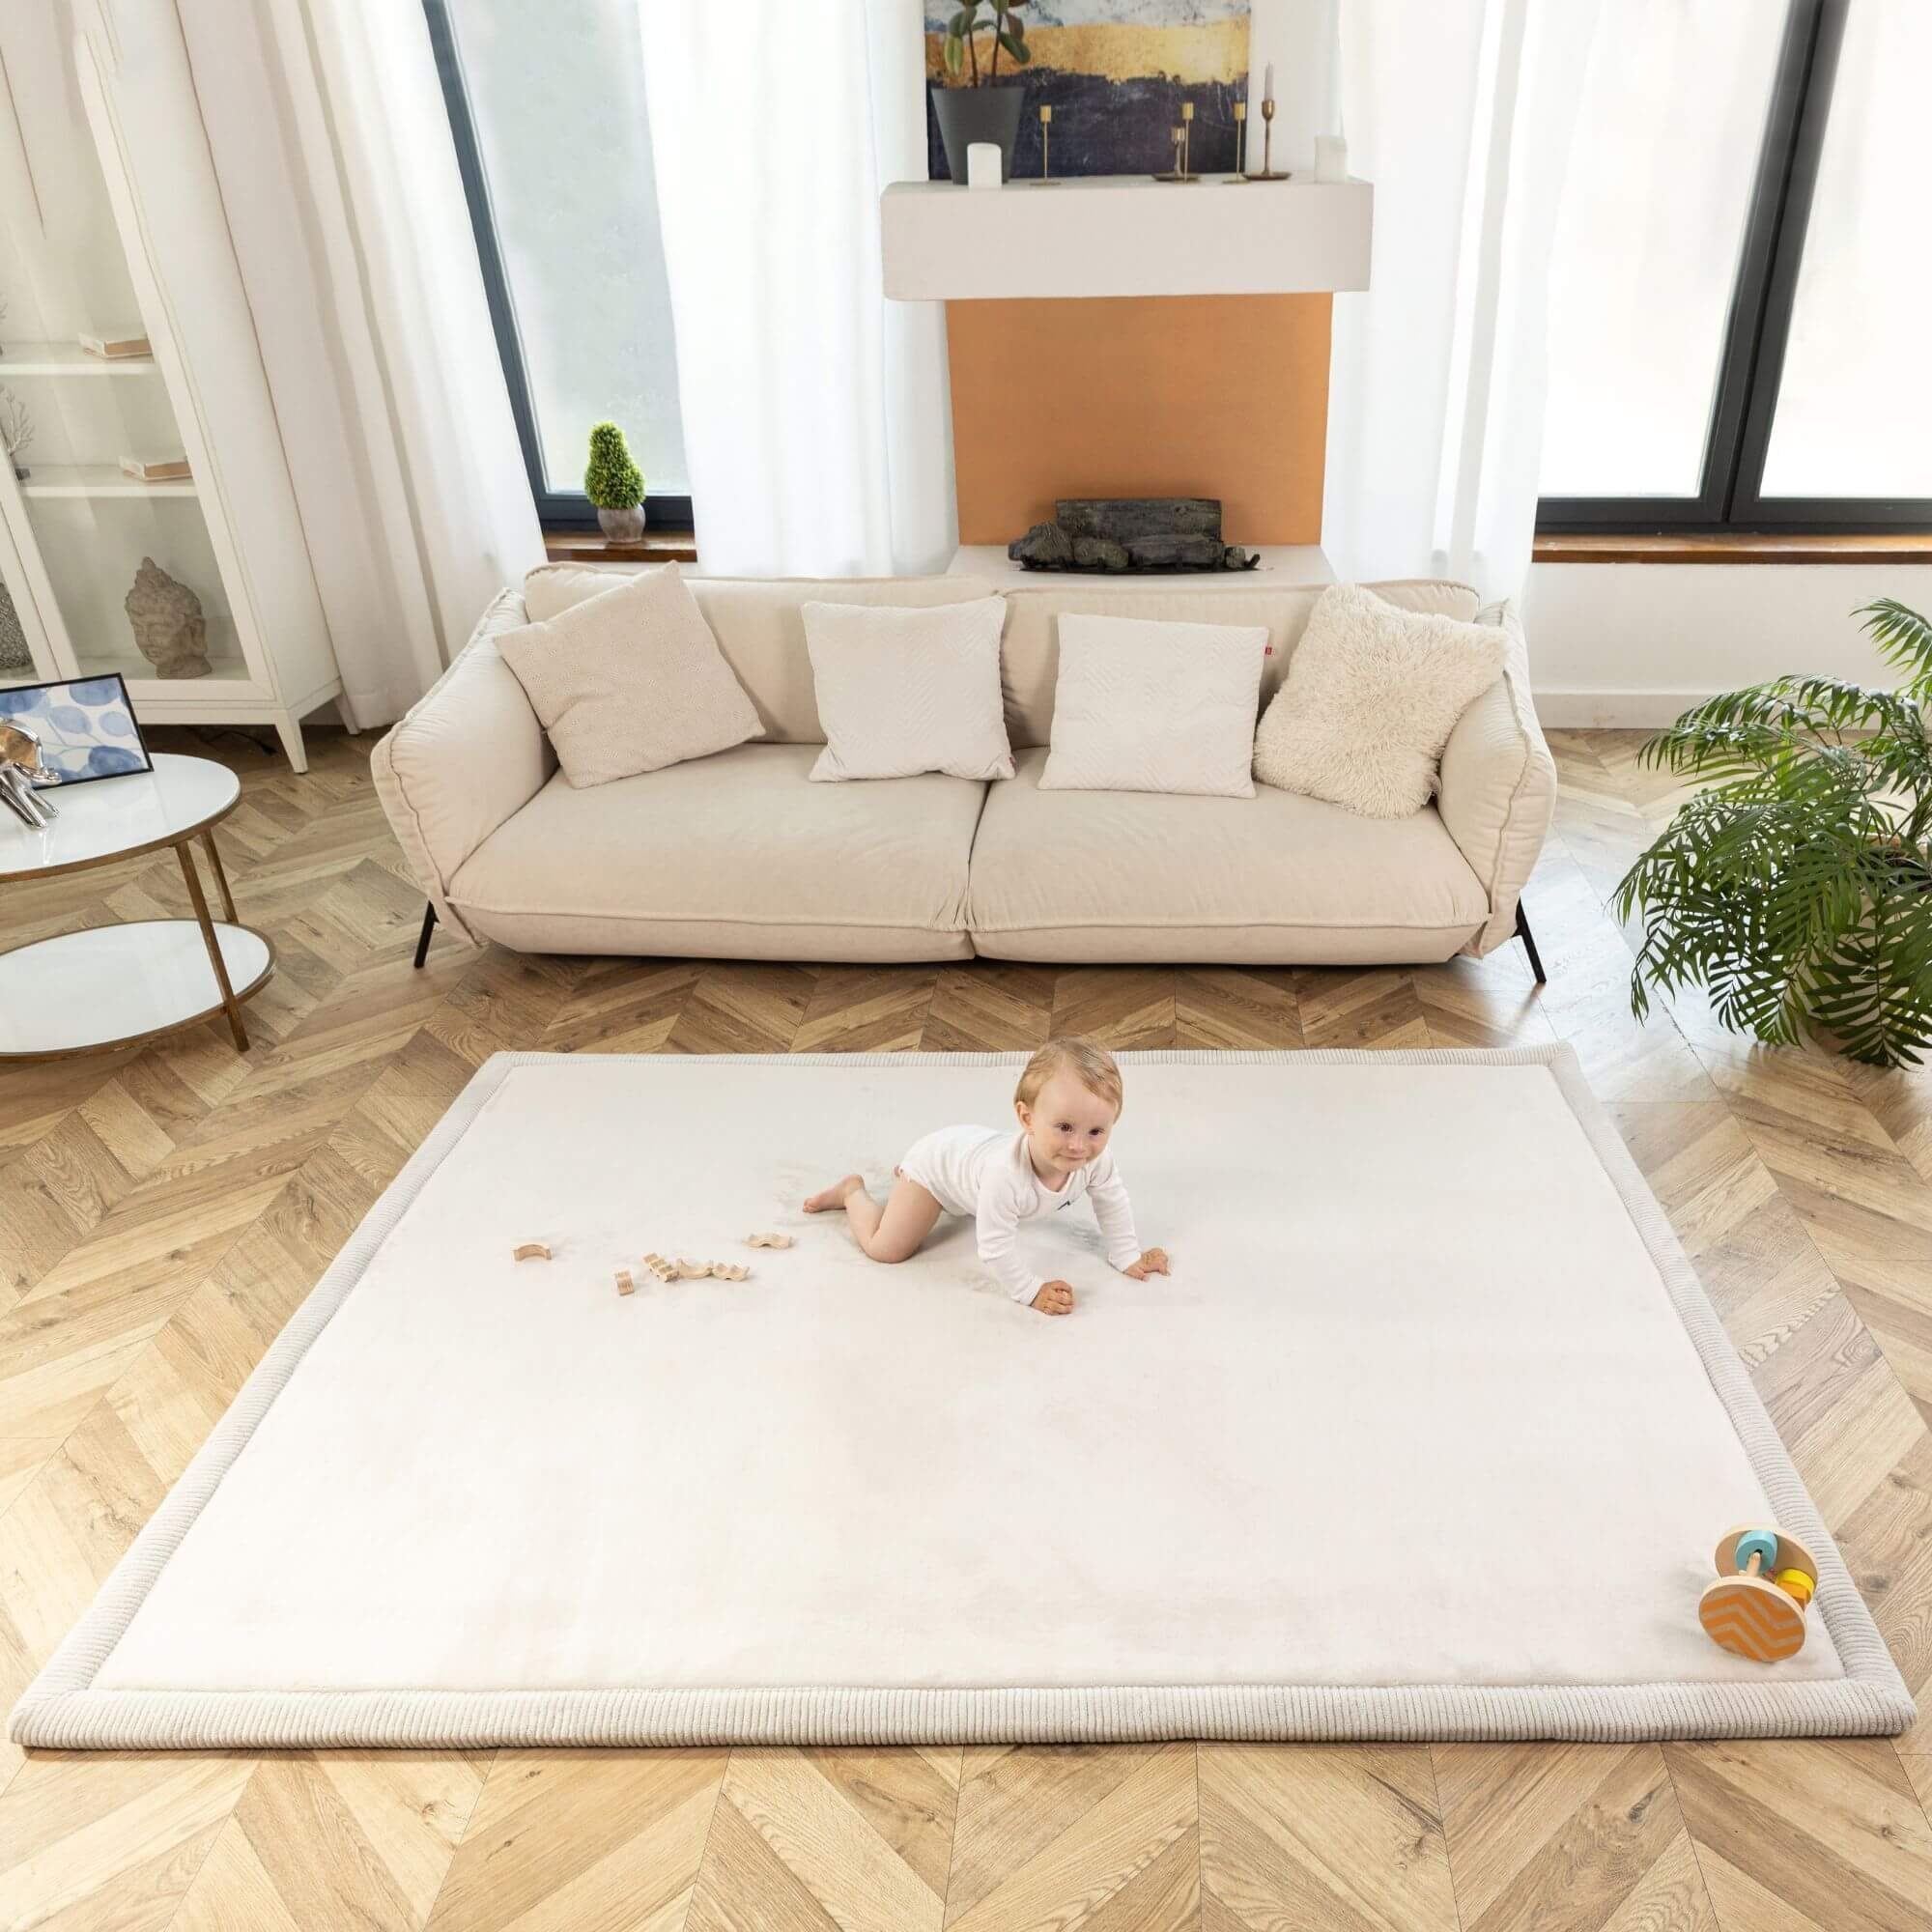 Kinderteppich Spielmatte für Baby 2x1,5m, Krabbeldecke für Baby mit Memory-Schaum, Hakuna Matte Grau